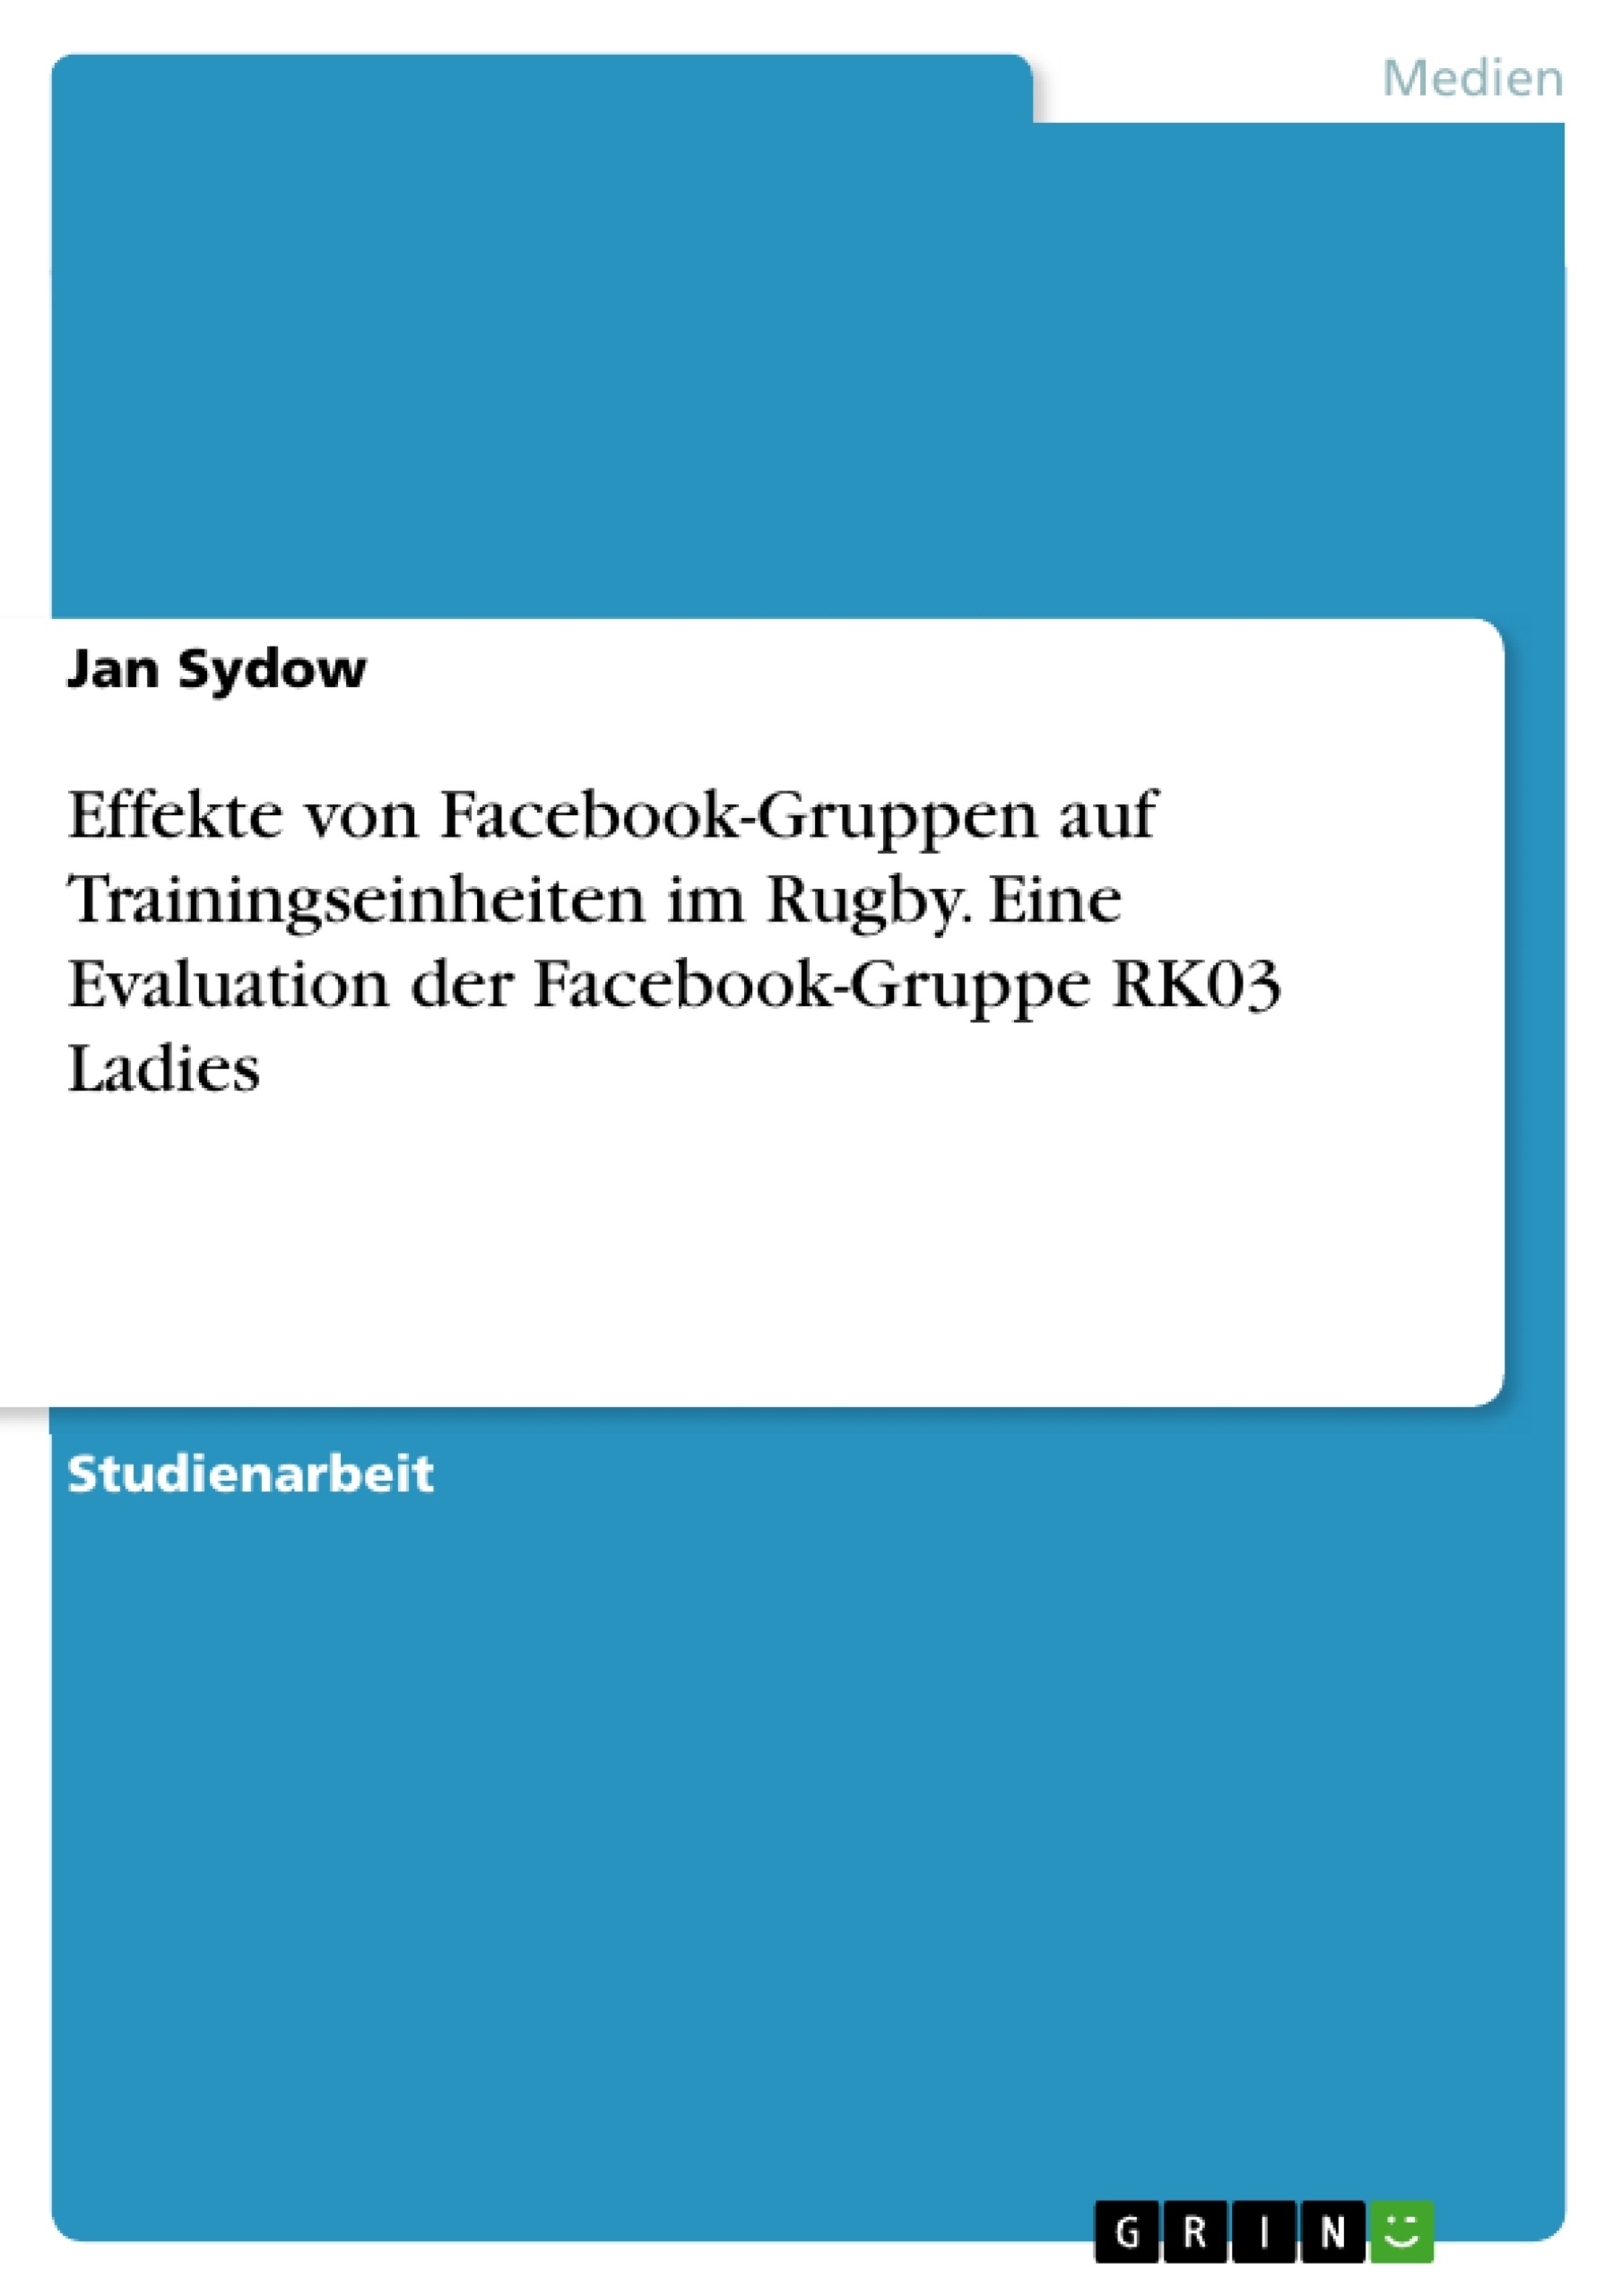 Title: Effekte von Facebook-Gruppen auf Trainingseinheiten im Rugby. Eine Evaluation der Facebook-Gruppe RK03 Ladies